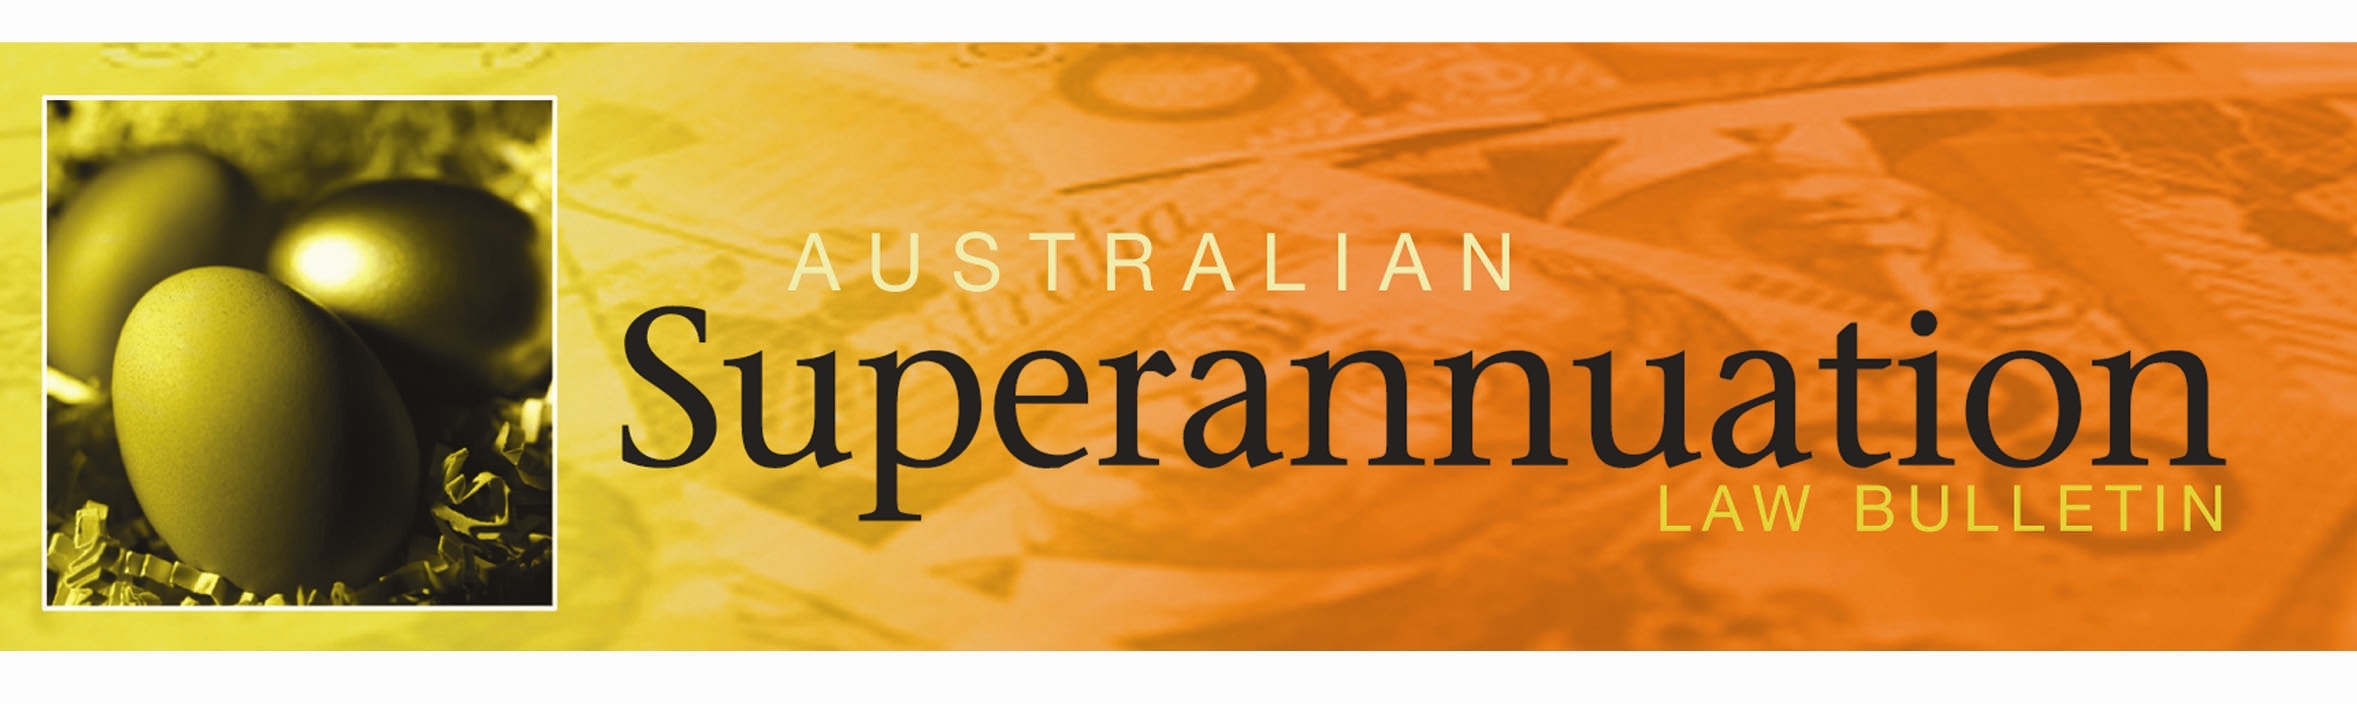 Australian Superannuation Bulletin